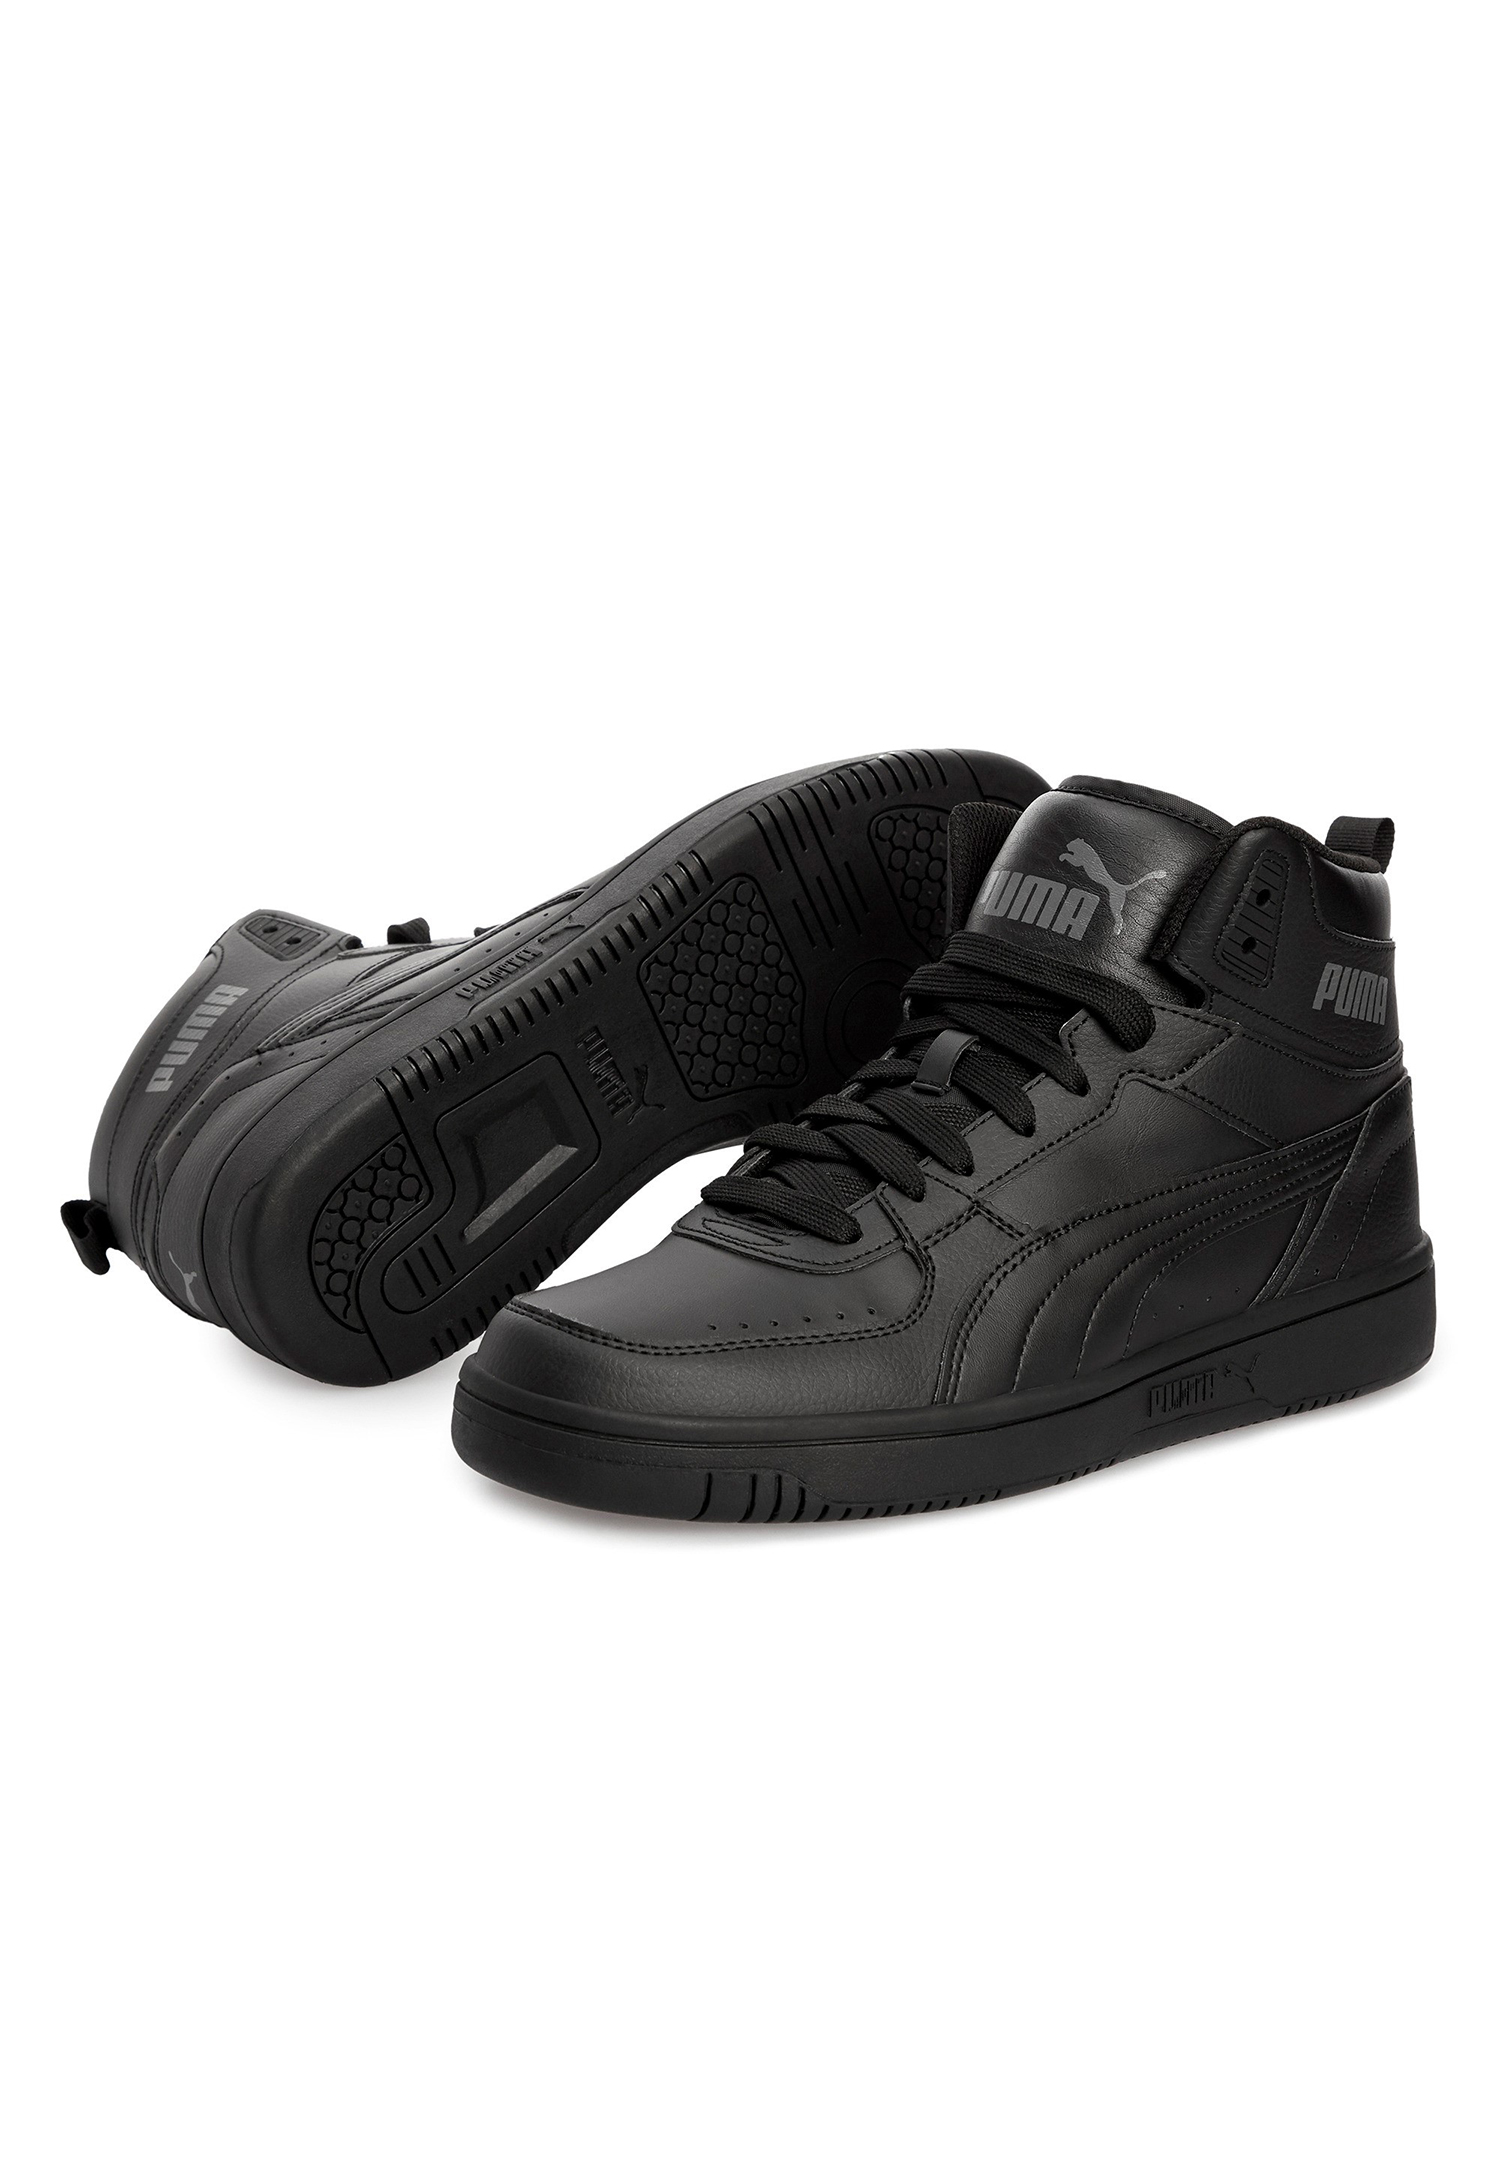 Puma Rebound JOY High Top Herren Sneaker Sportschuh 374765 schwarz